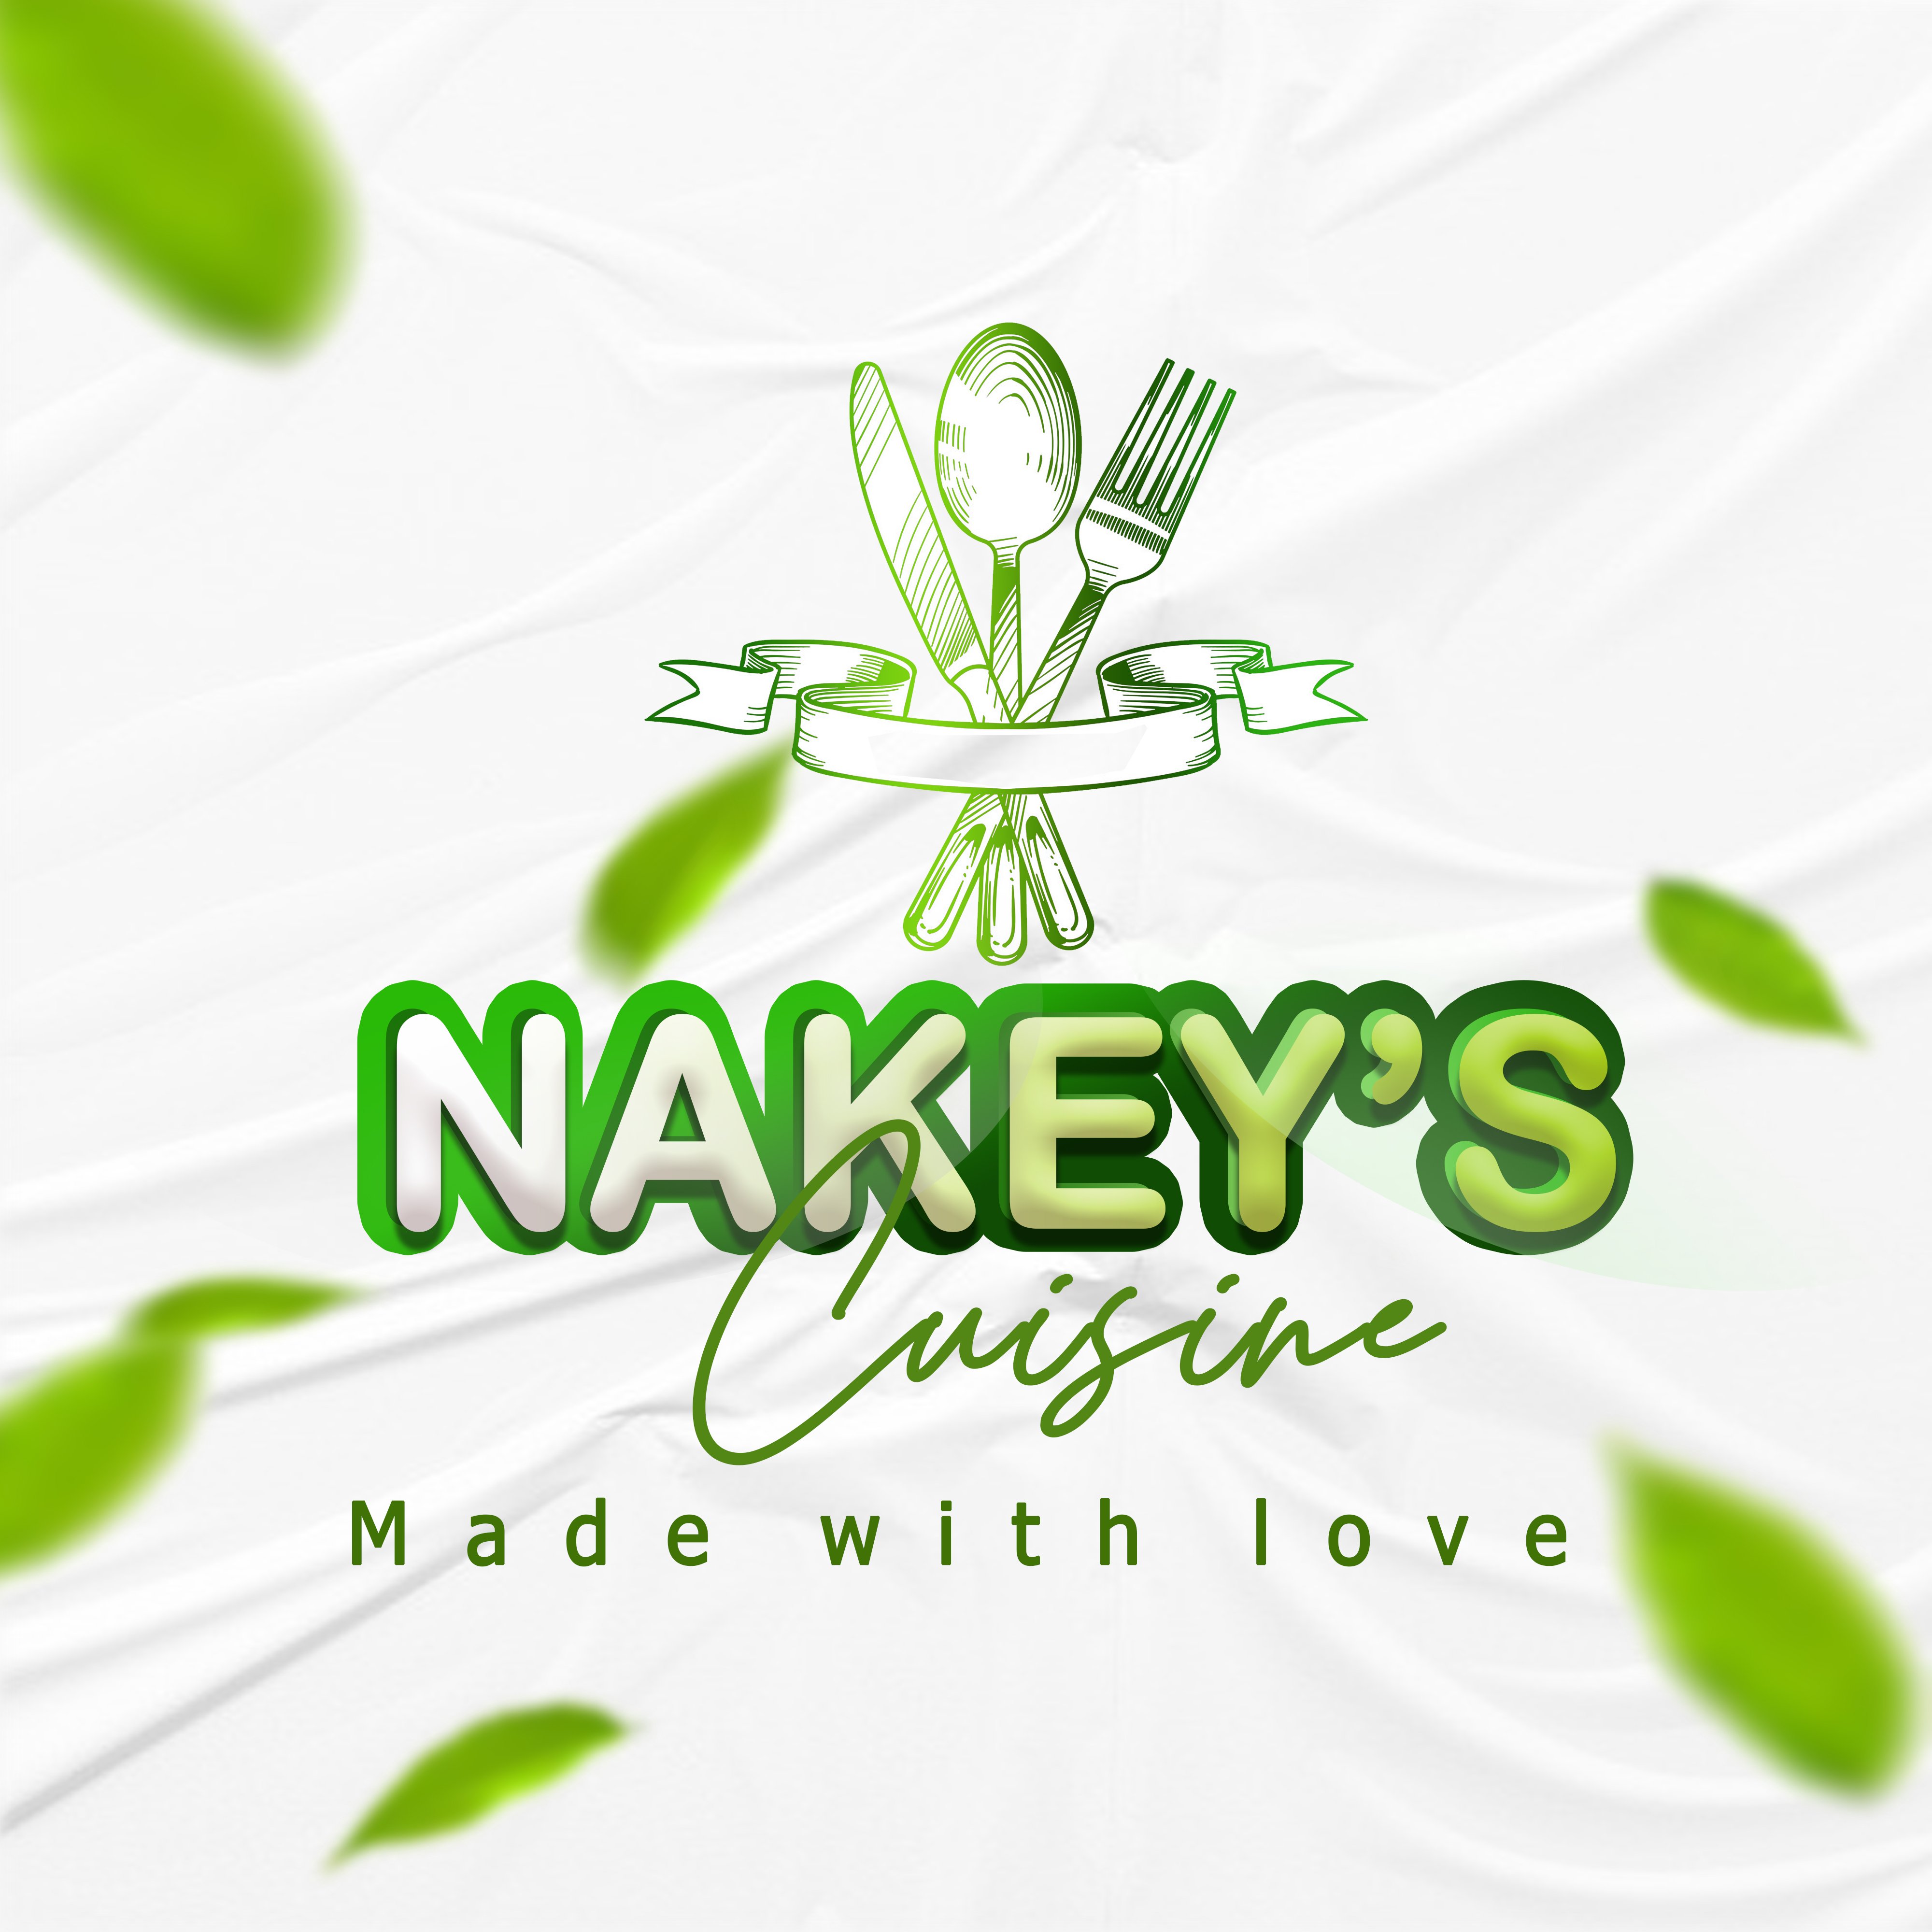 Nakeys cuisine